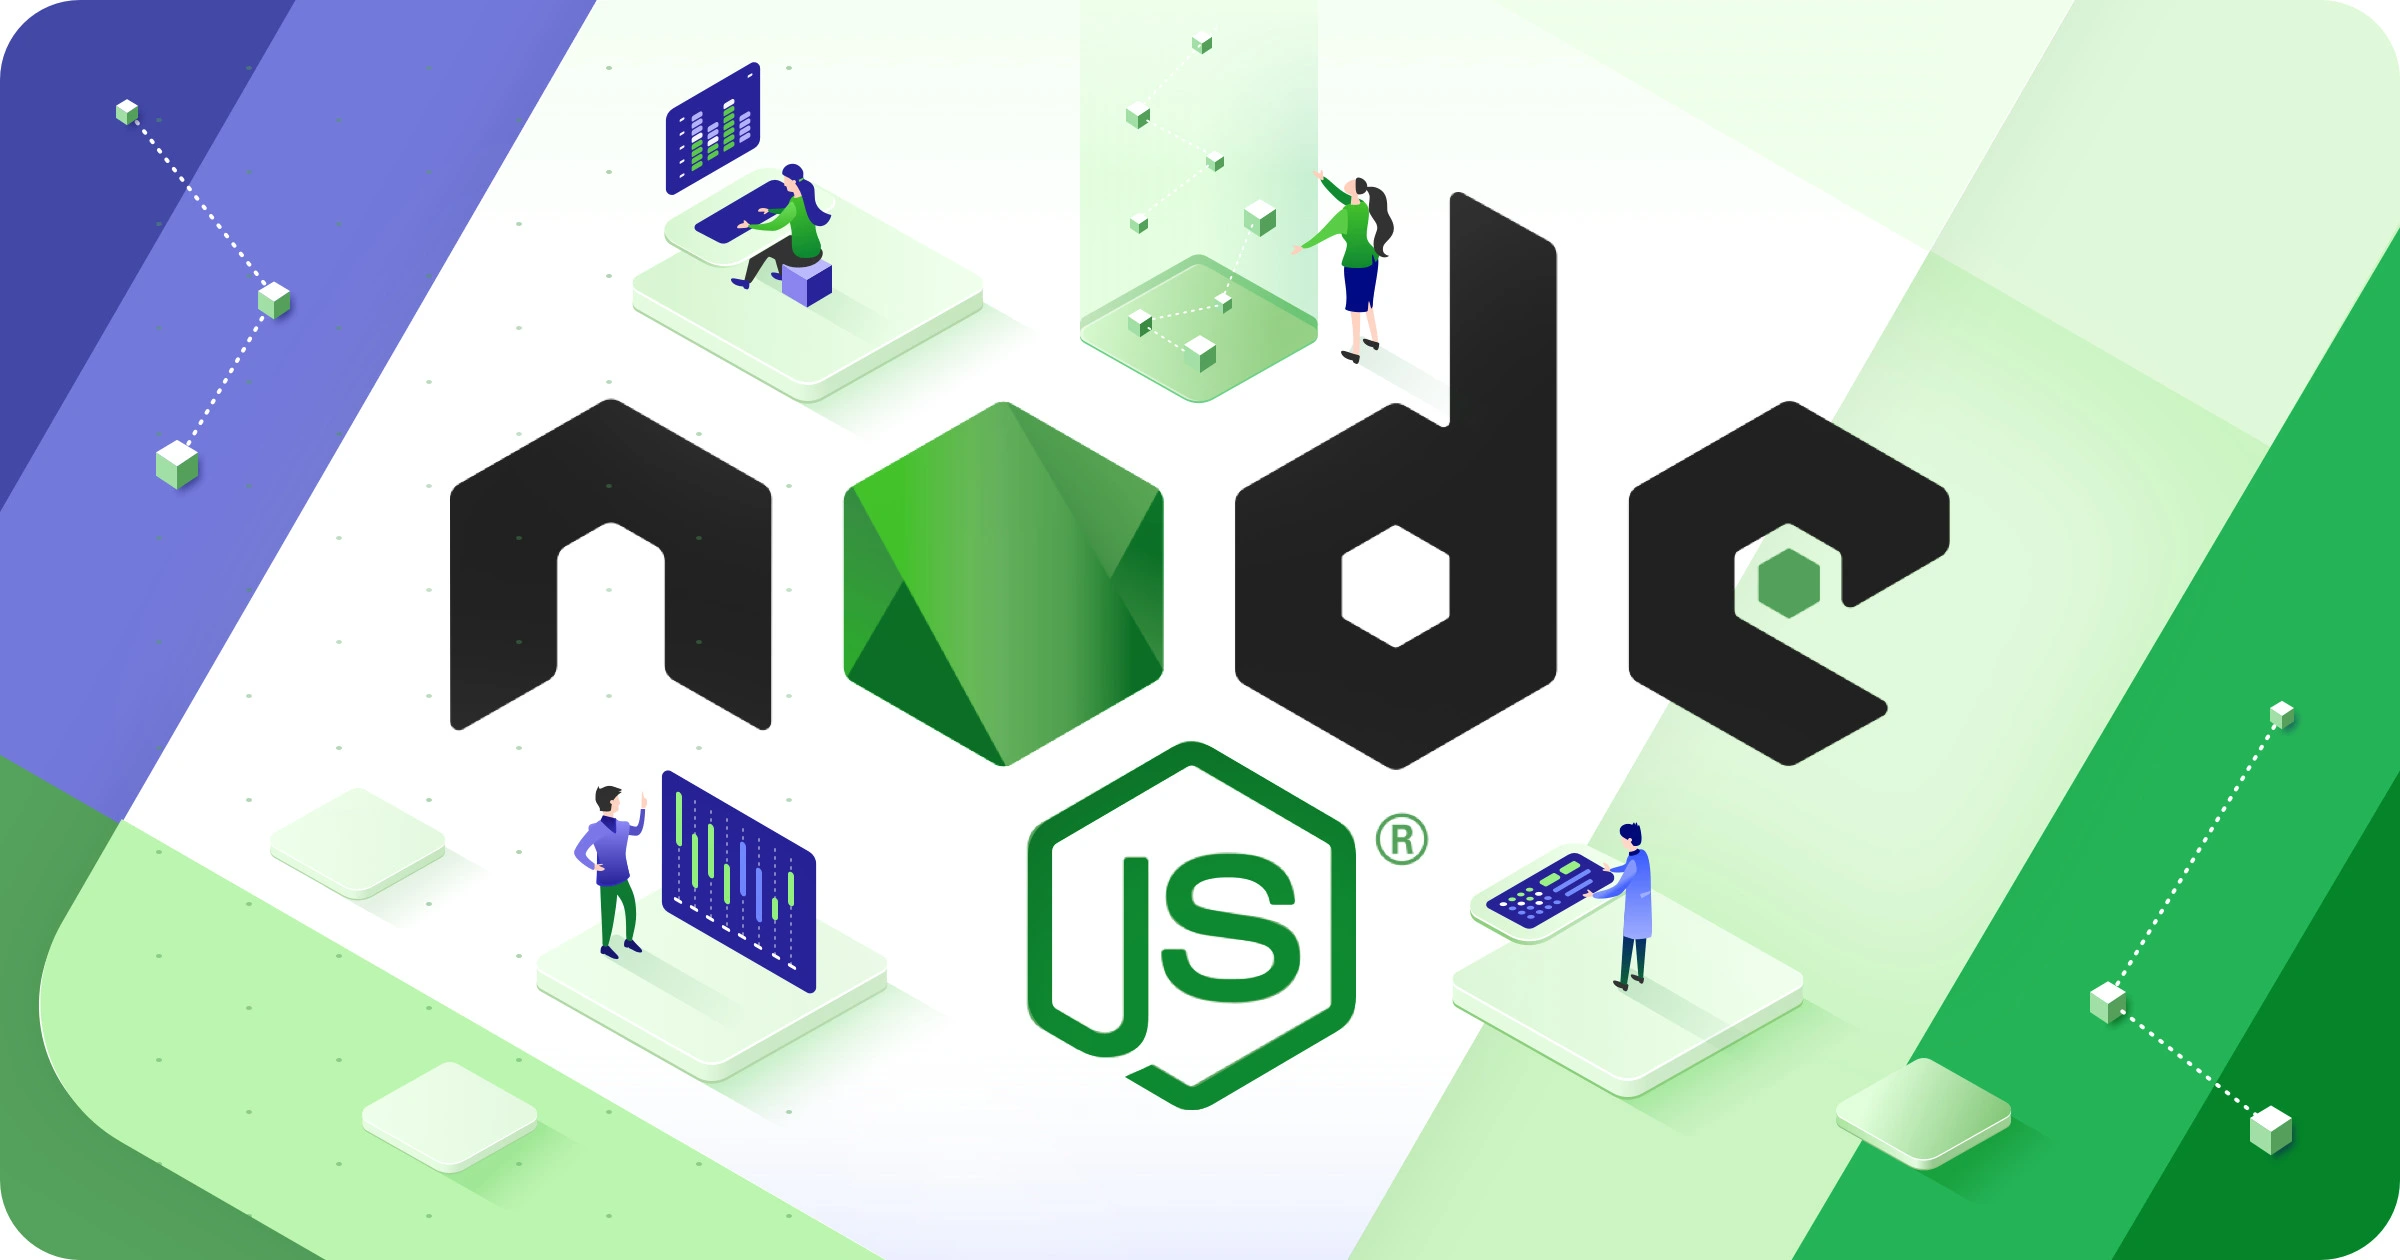 node JS